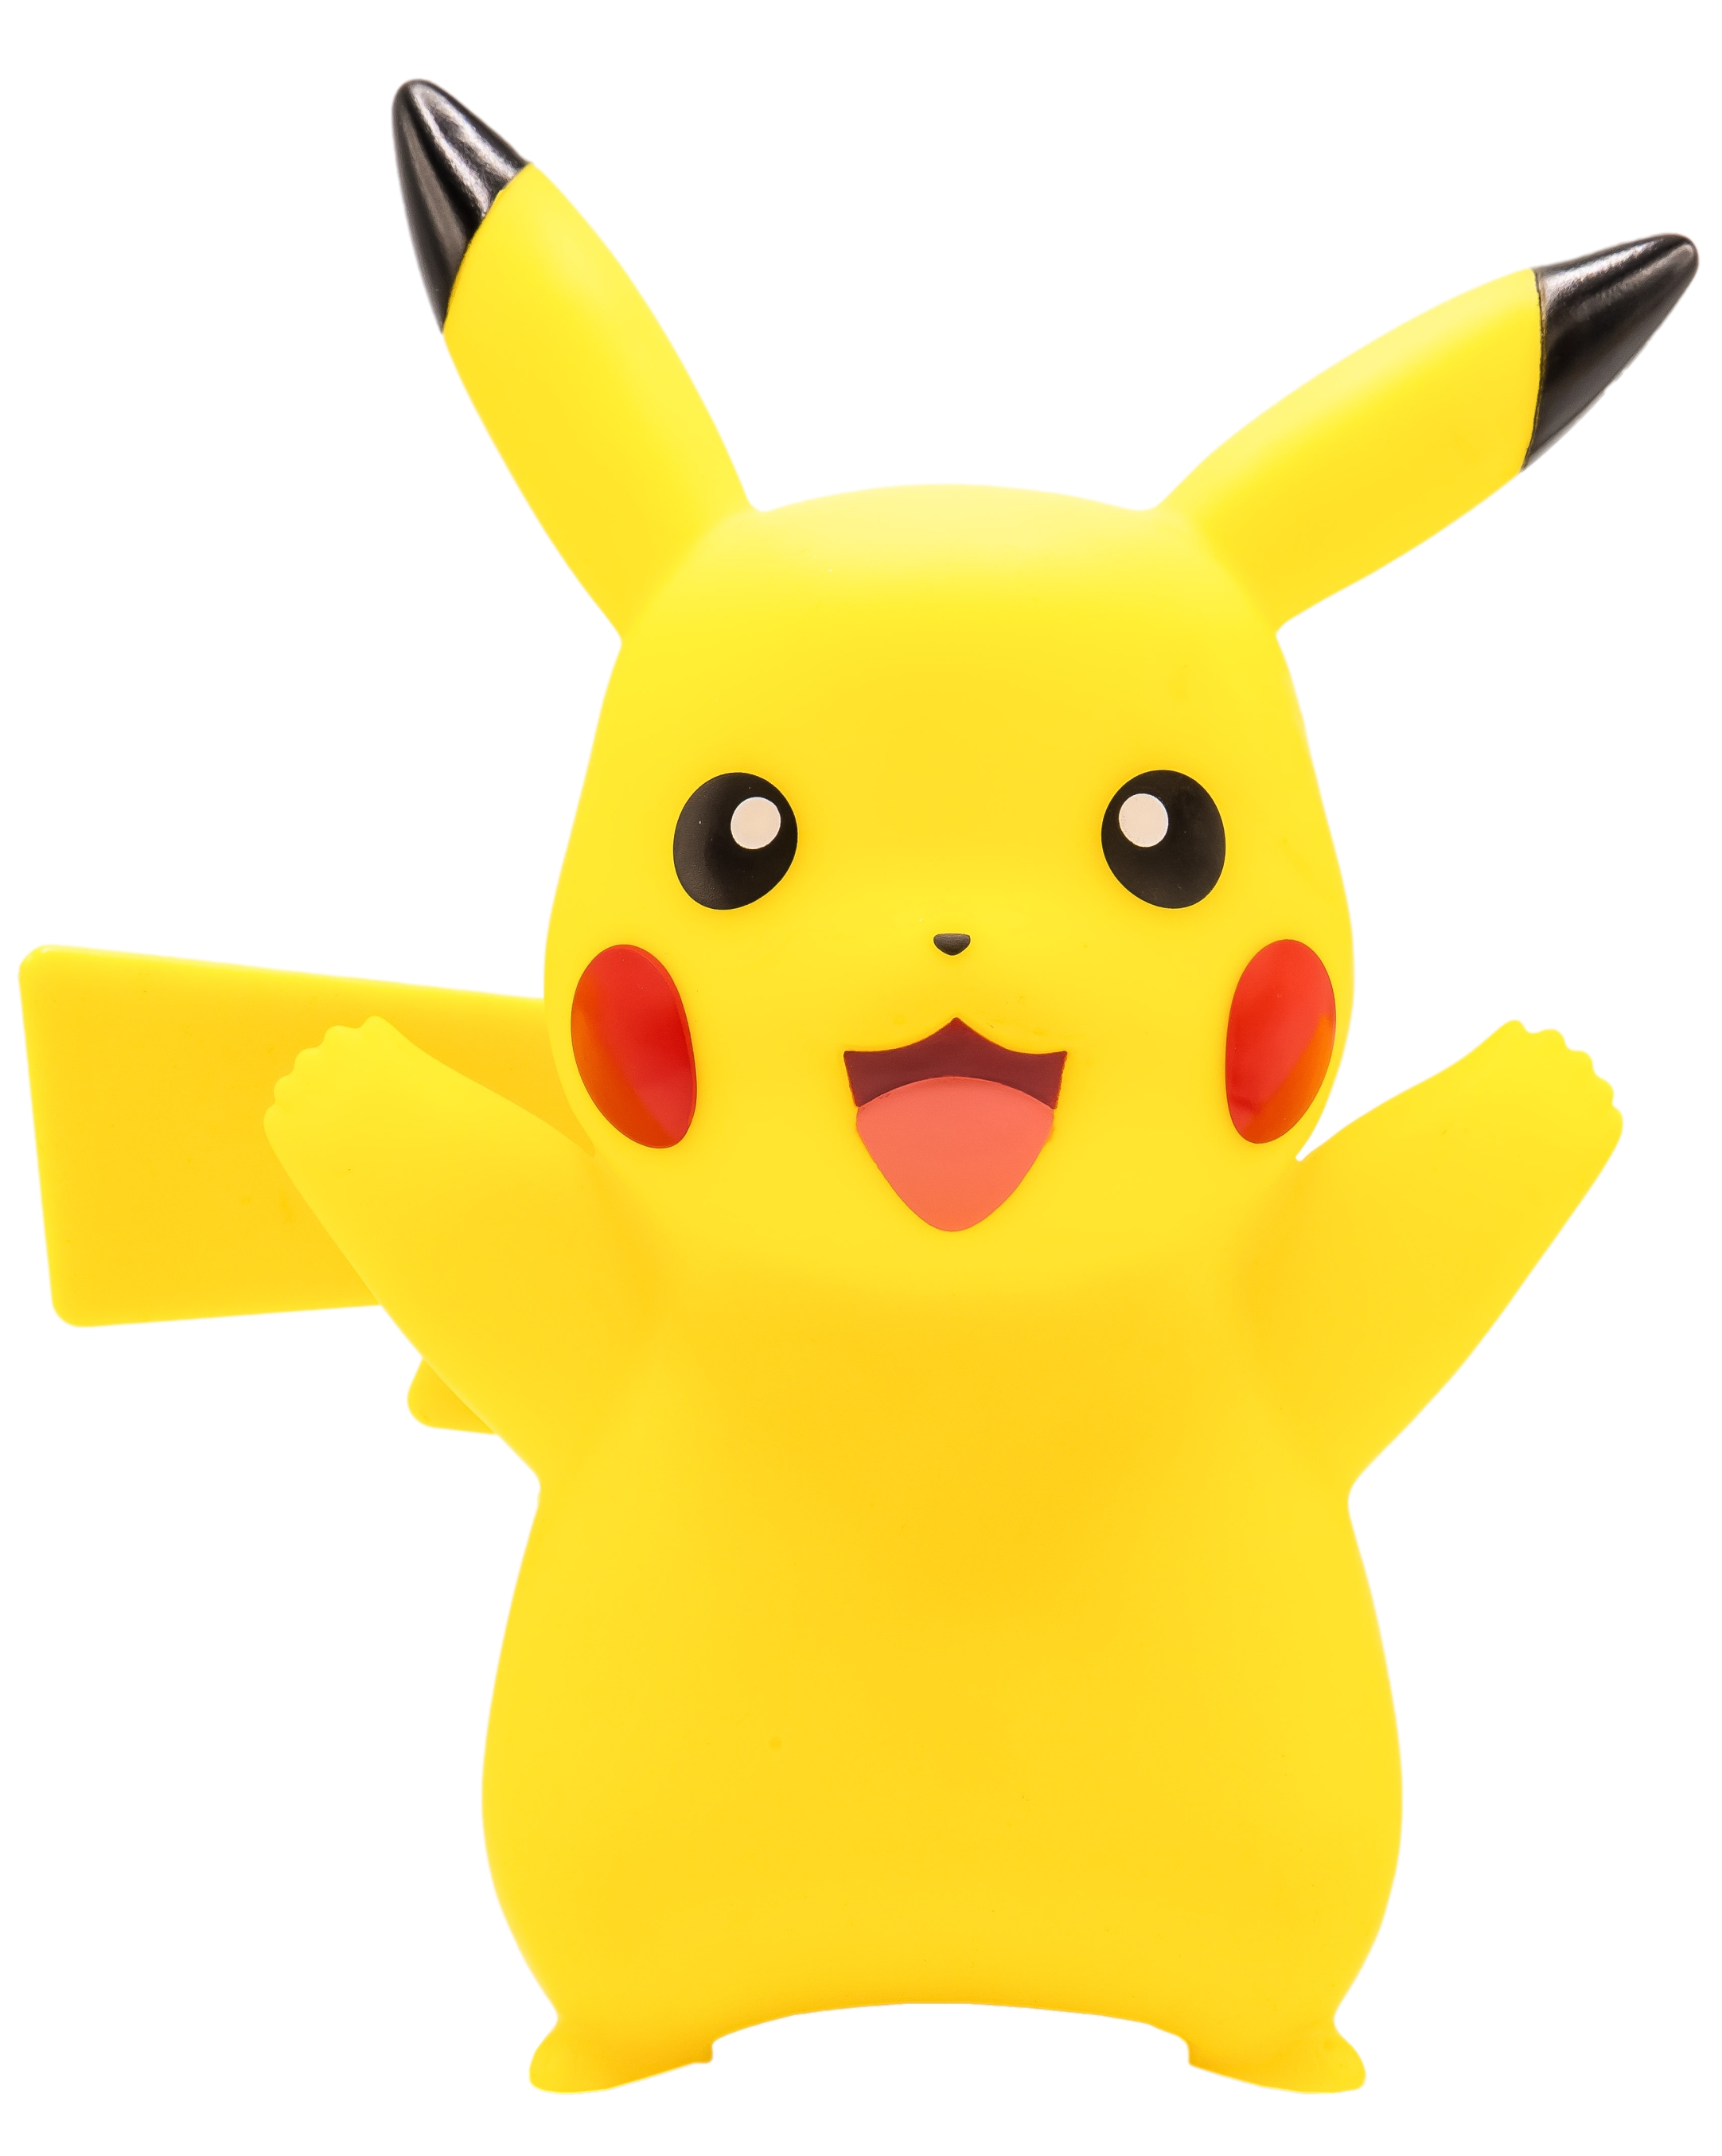 TEKNOFUN: Pokemon Pikachu Pokeball Lampada Sveglia Teknofun - Vendiloshop